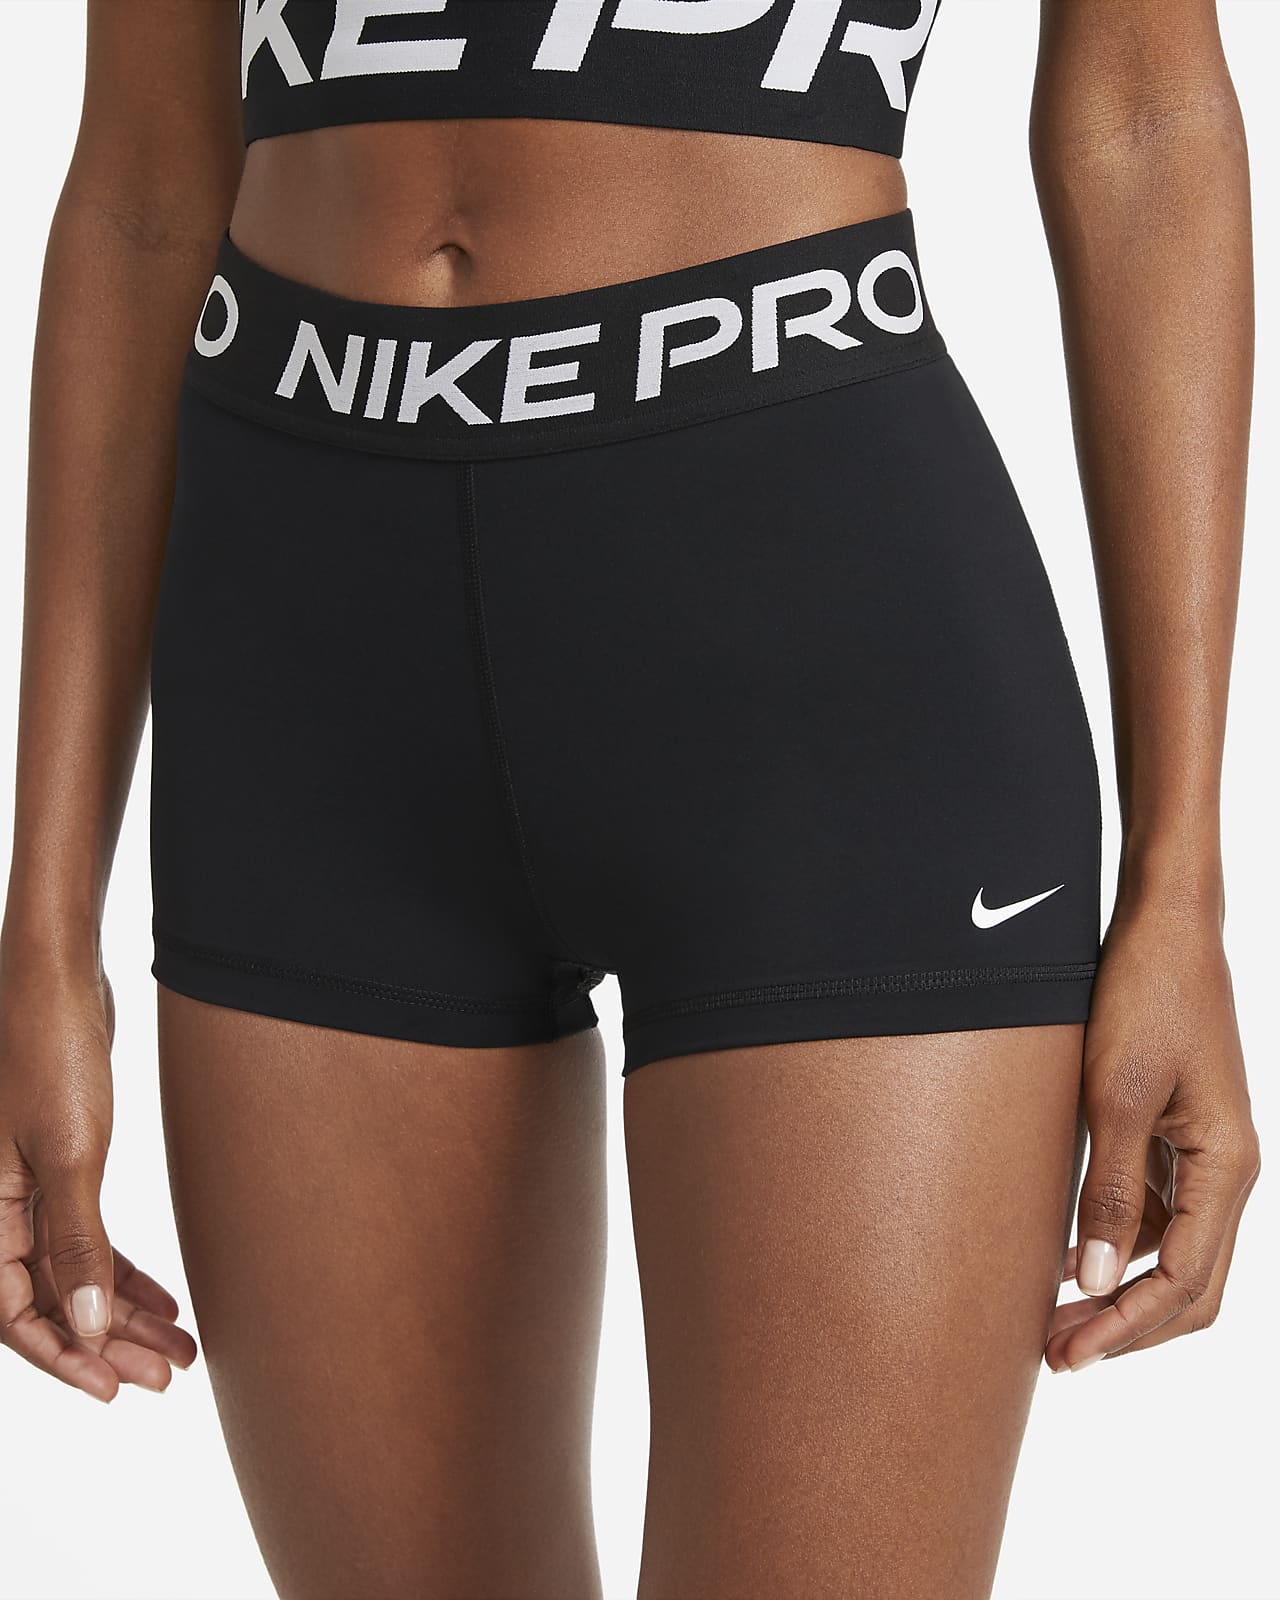 Calções de treino Nike Pro para mulher